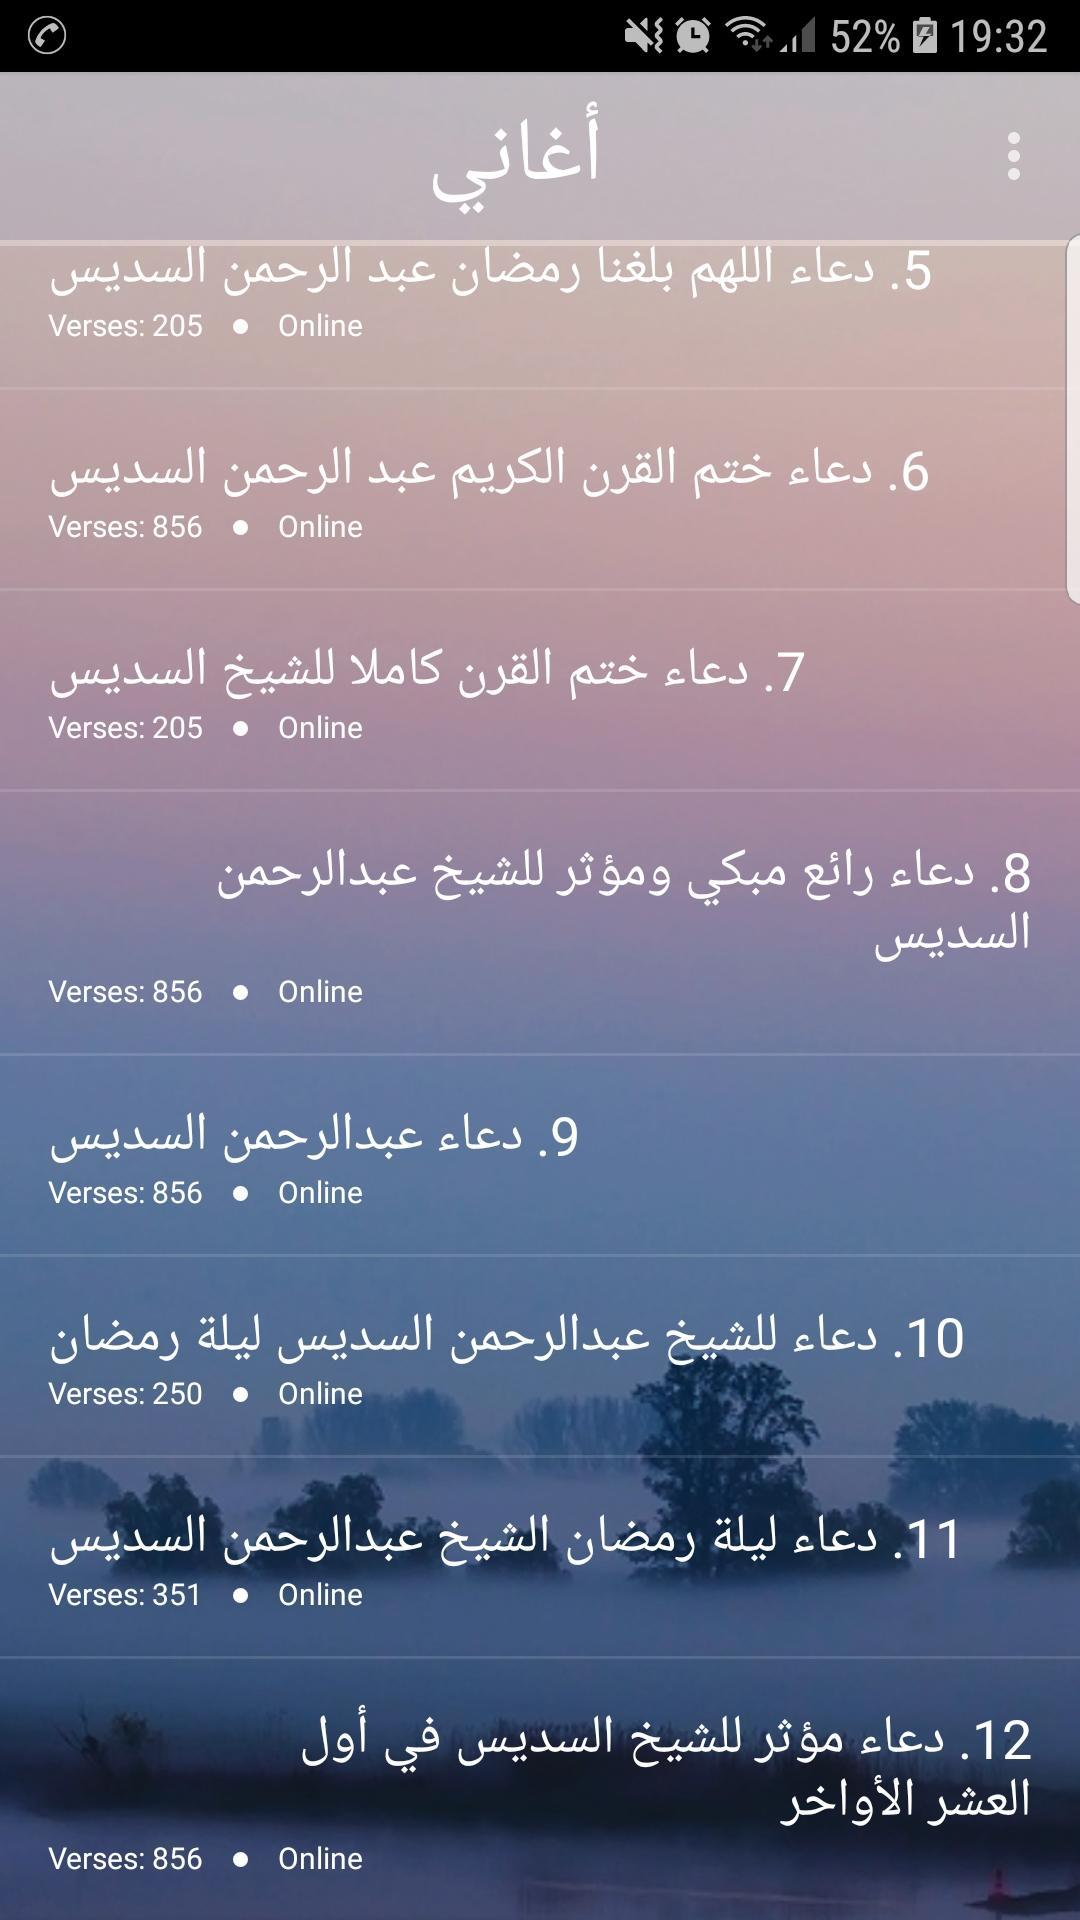 ادعية عبدالرحمن السديس 2019 Mp3 Soudaissi For Android Apk Download